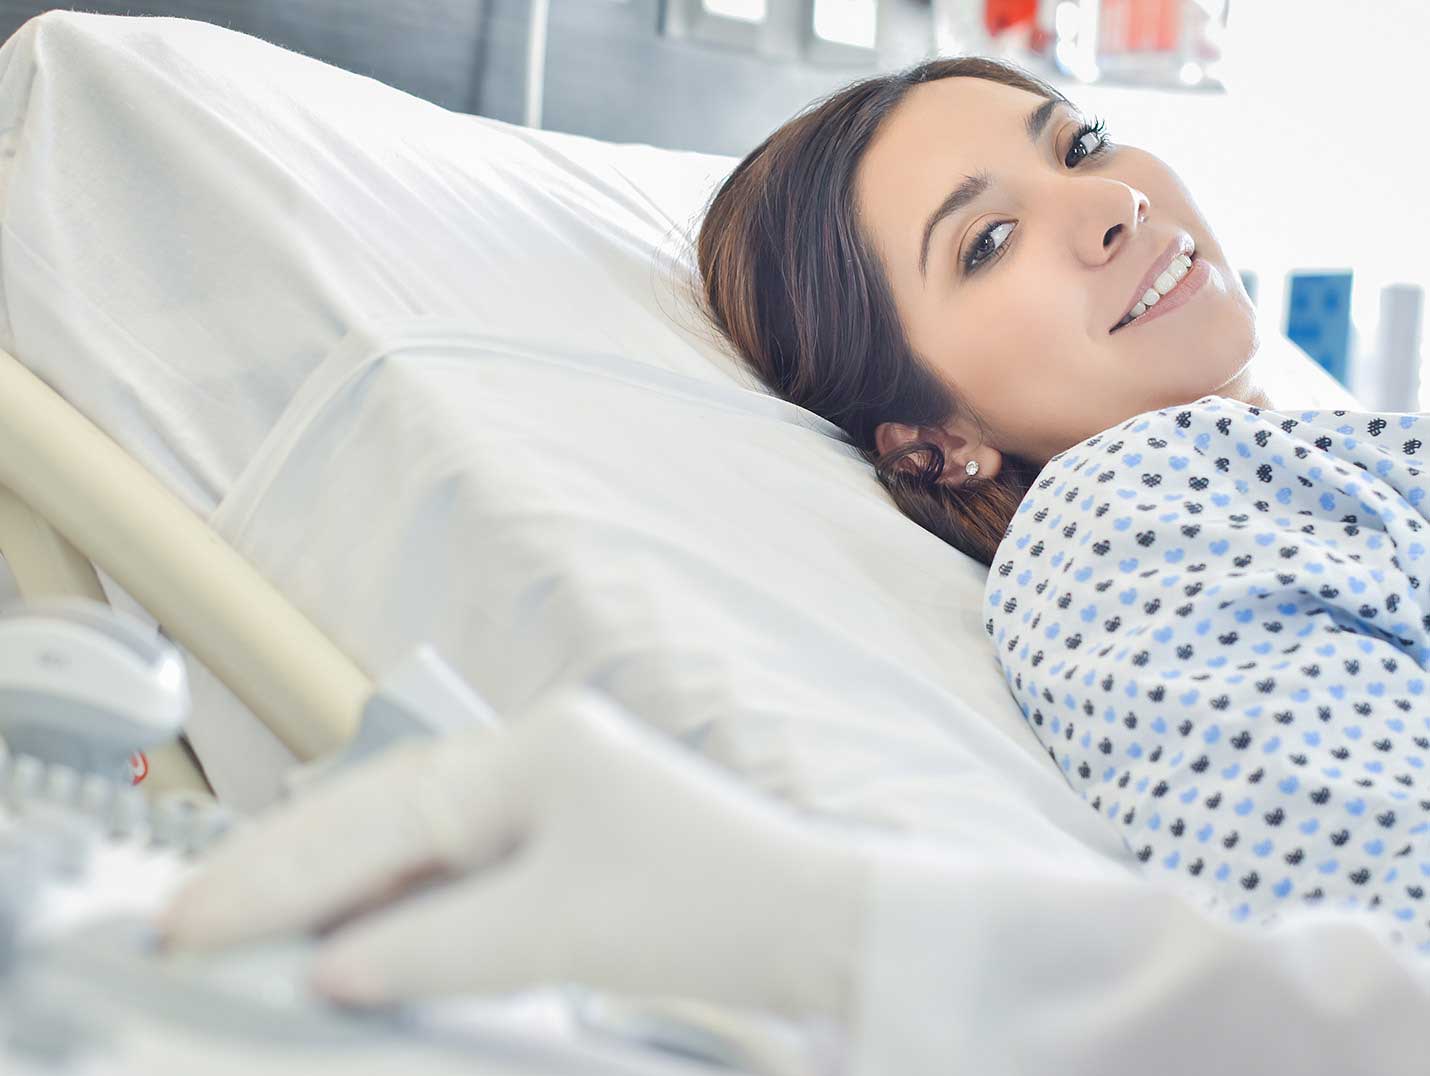 Mano del médico con un guante blanco sobre un monitor. A su lado está una paciente acostada en una cama hospitalaria